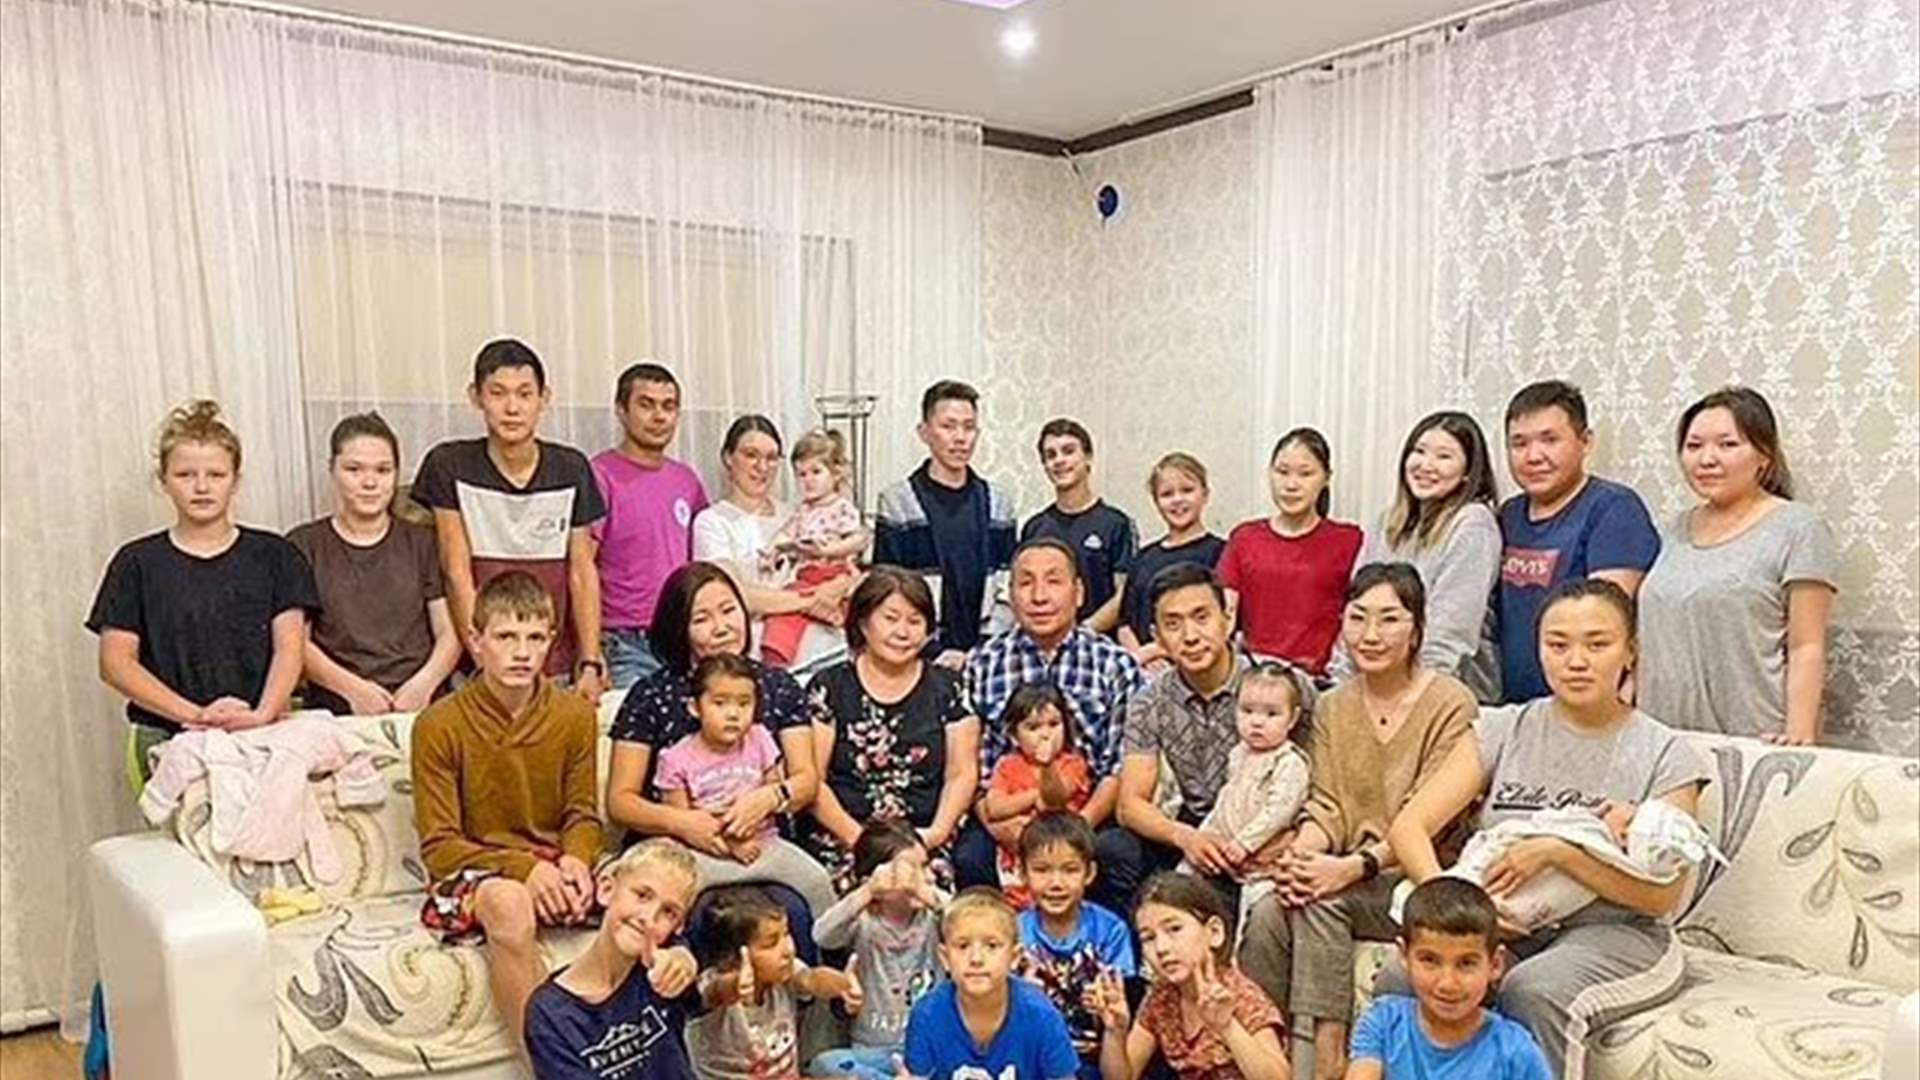 عائلة تعيش بسعادة وتتحدى الظروف القاسية في سيبيريا... عدد أفرادها هائل!